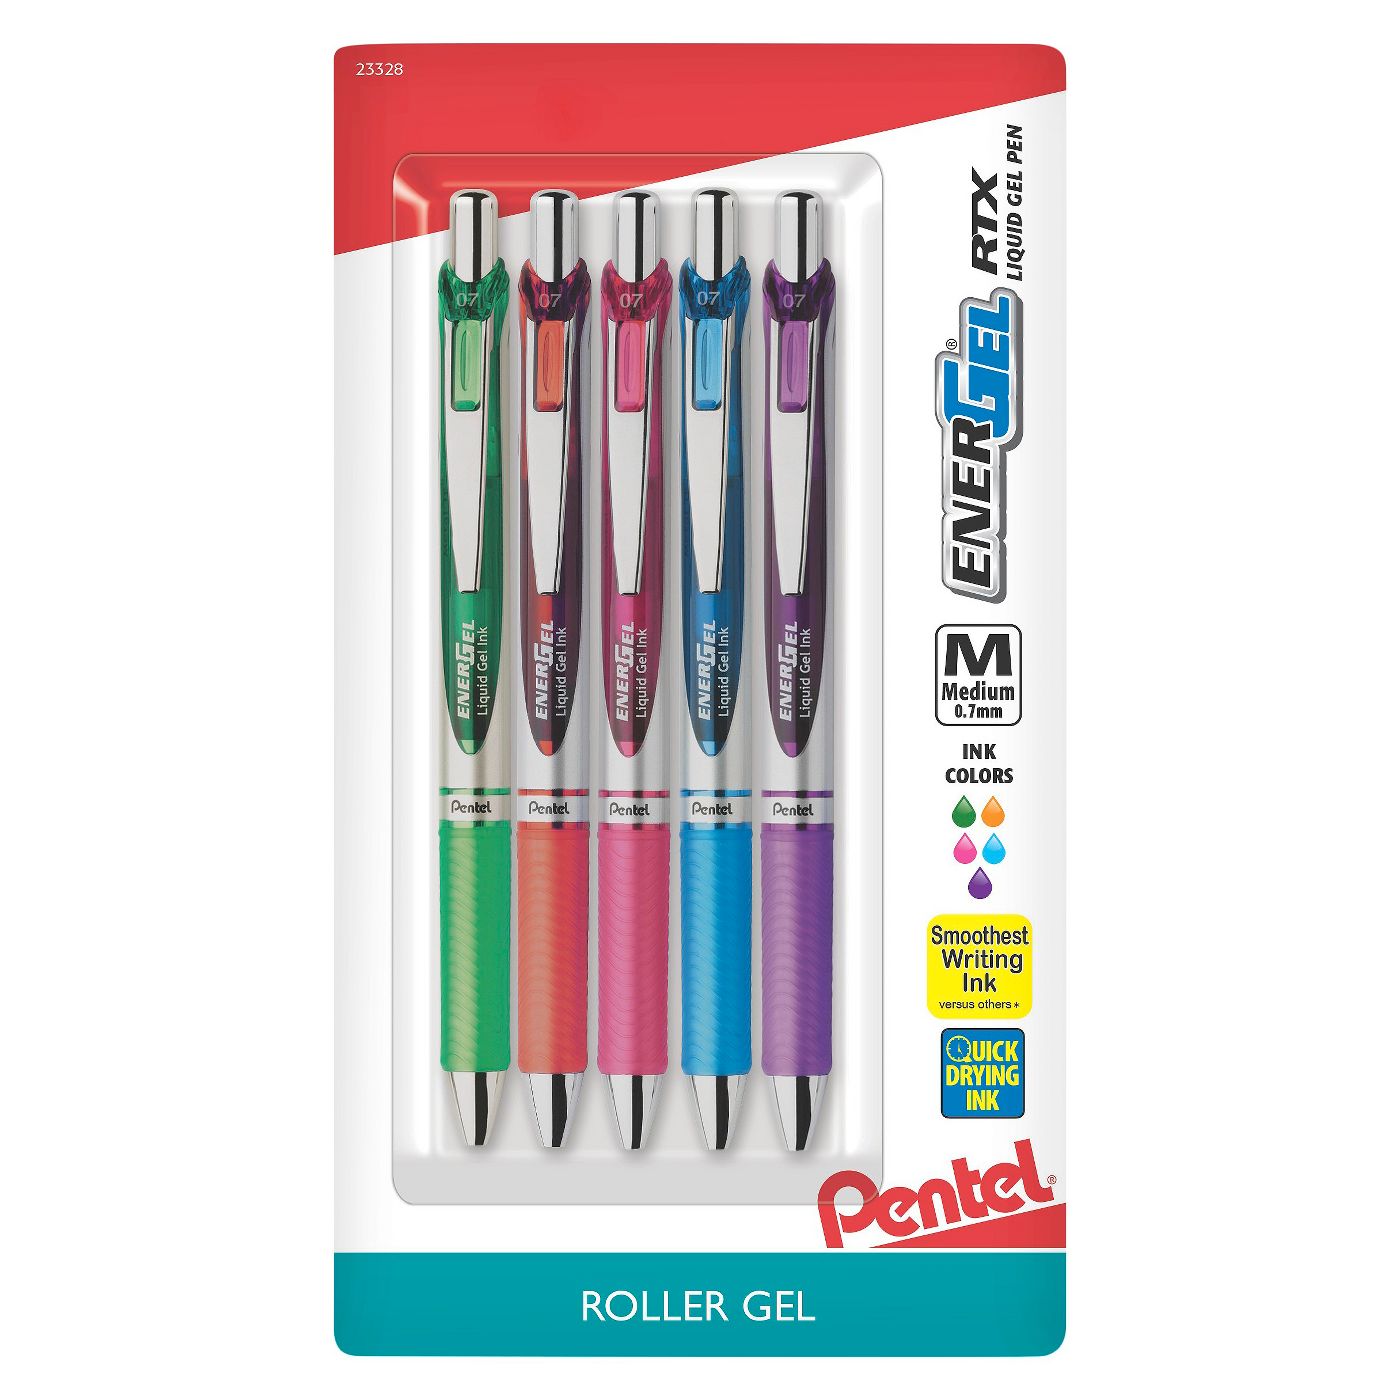 PentelÂ® EnergelÂ® Rollergel Pens, 0.7mm, 5ct - Multicolor Ink - image 1 of 1